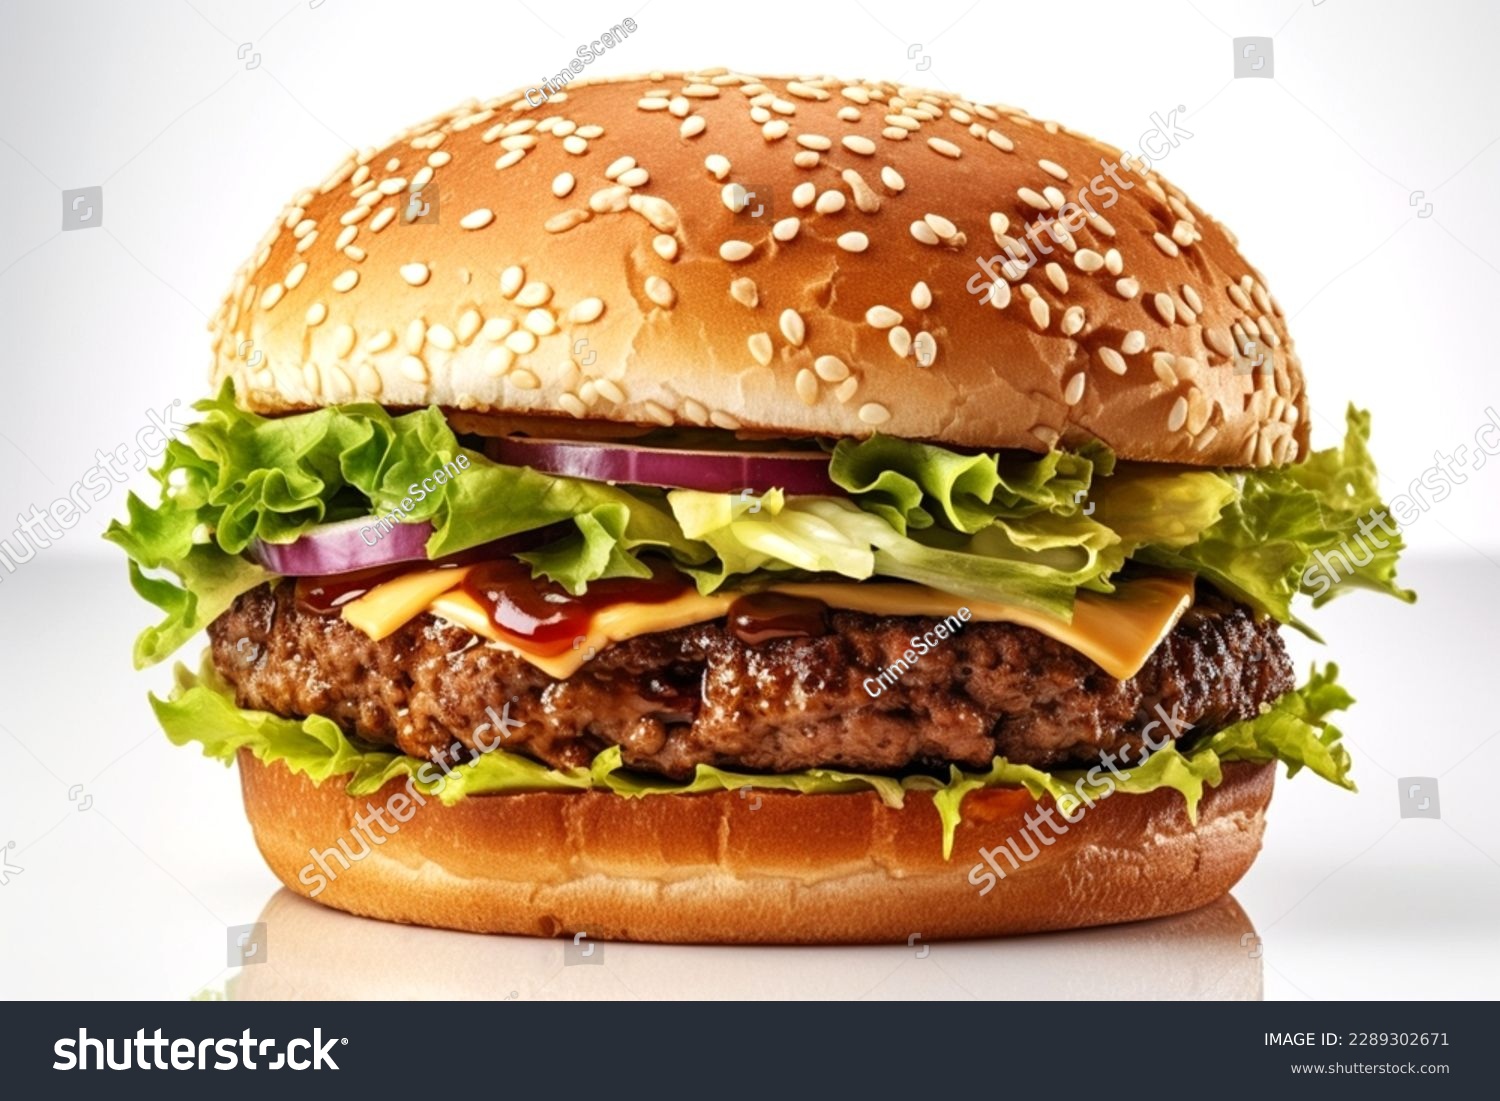 Tasty Hamburger with white Background #2289302671